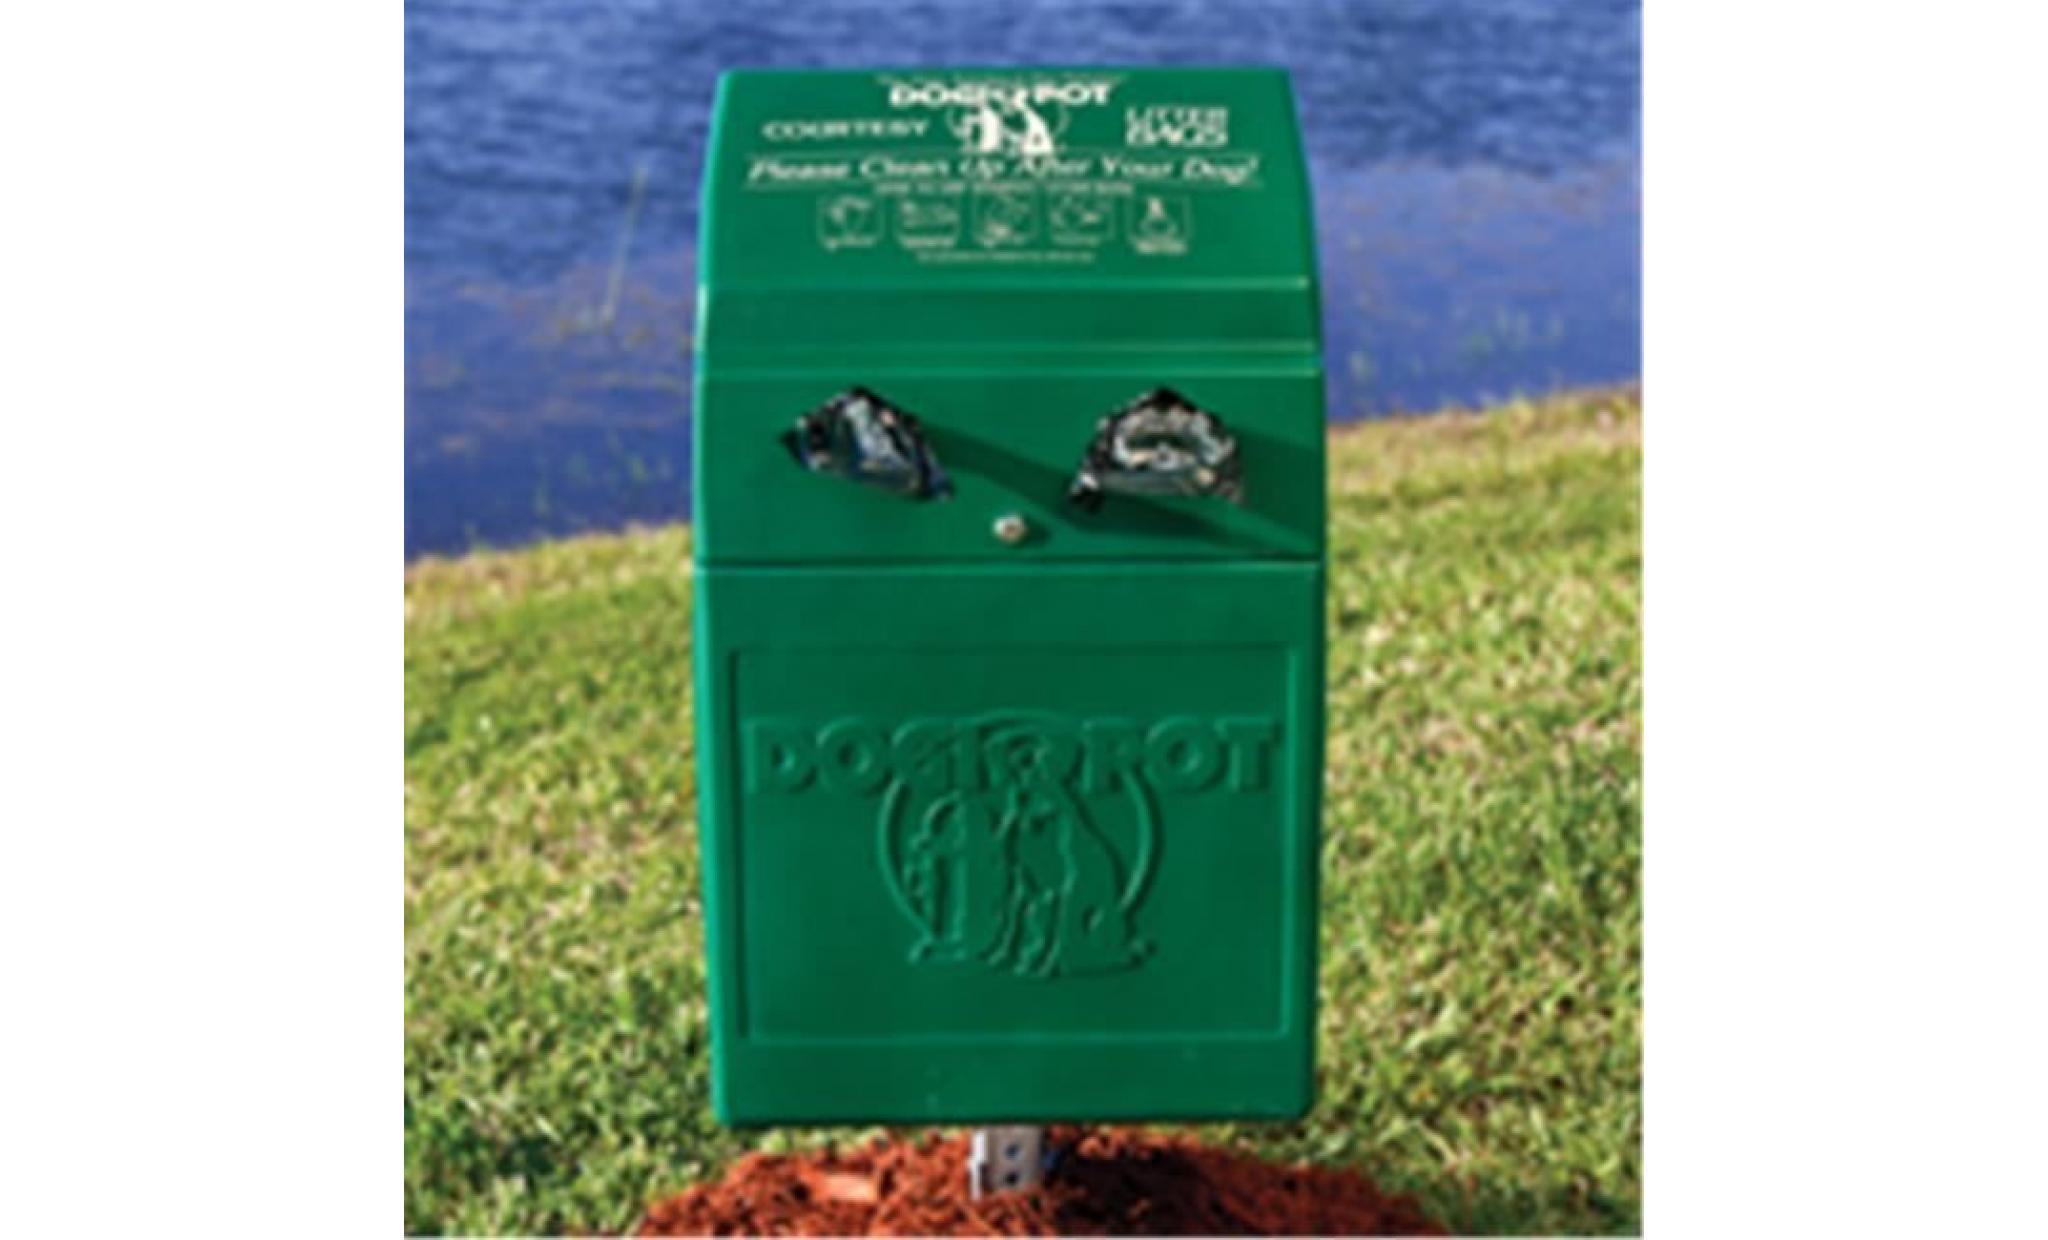 1005 2 dog valet polyethylene pet waste station & receptacle, forest green 1n2v0f